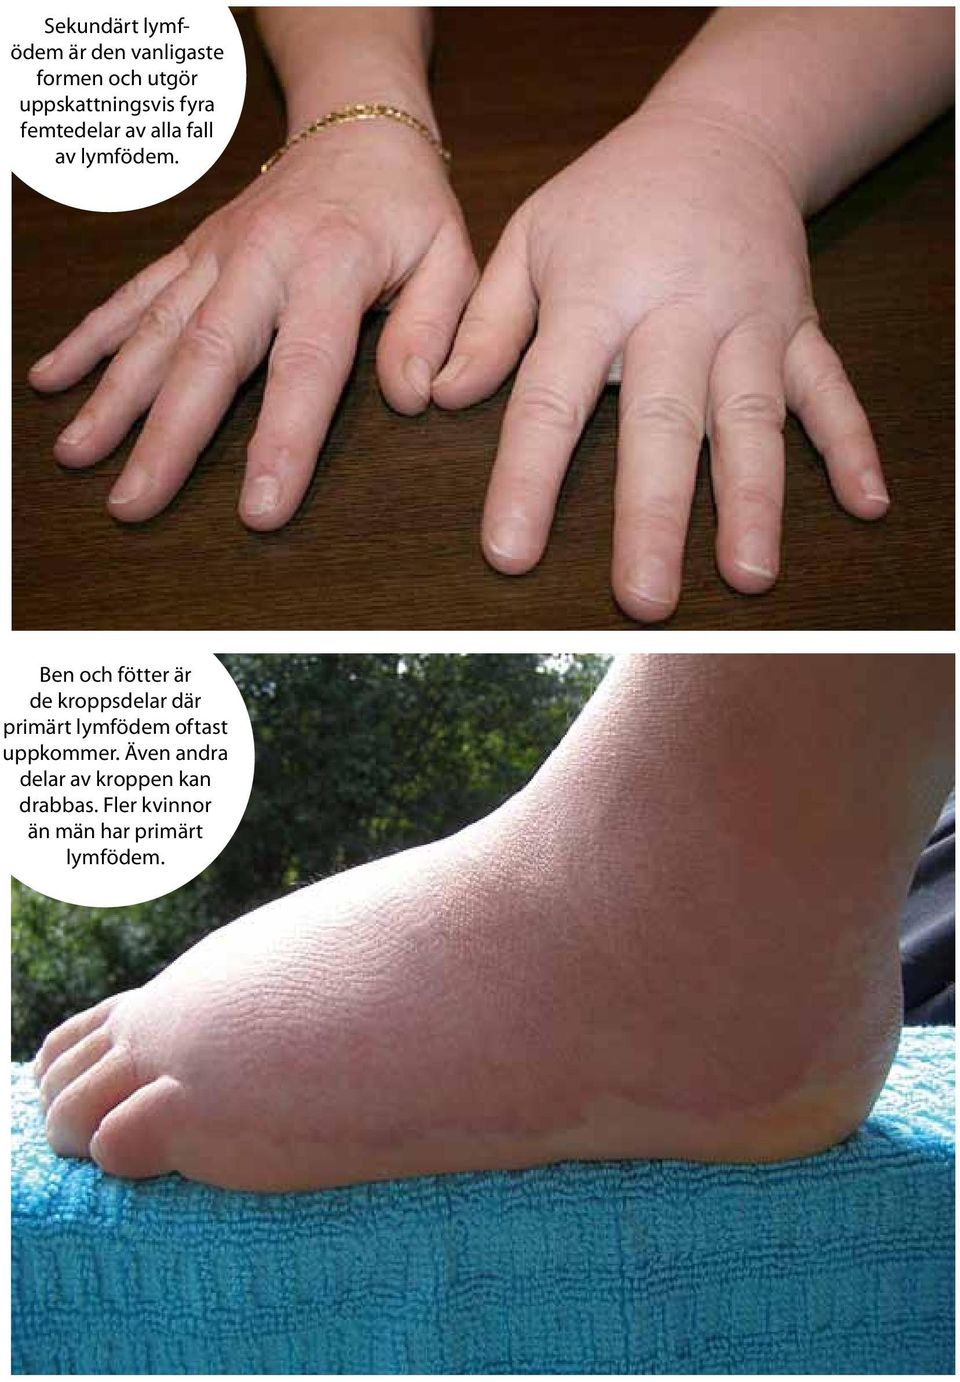 Ben och fötter är de kroppsdelar där primärt lymfödem oftast